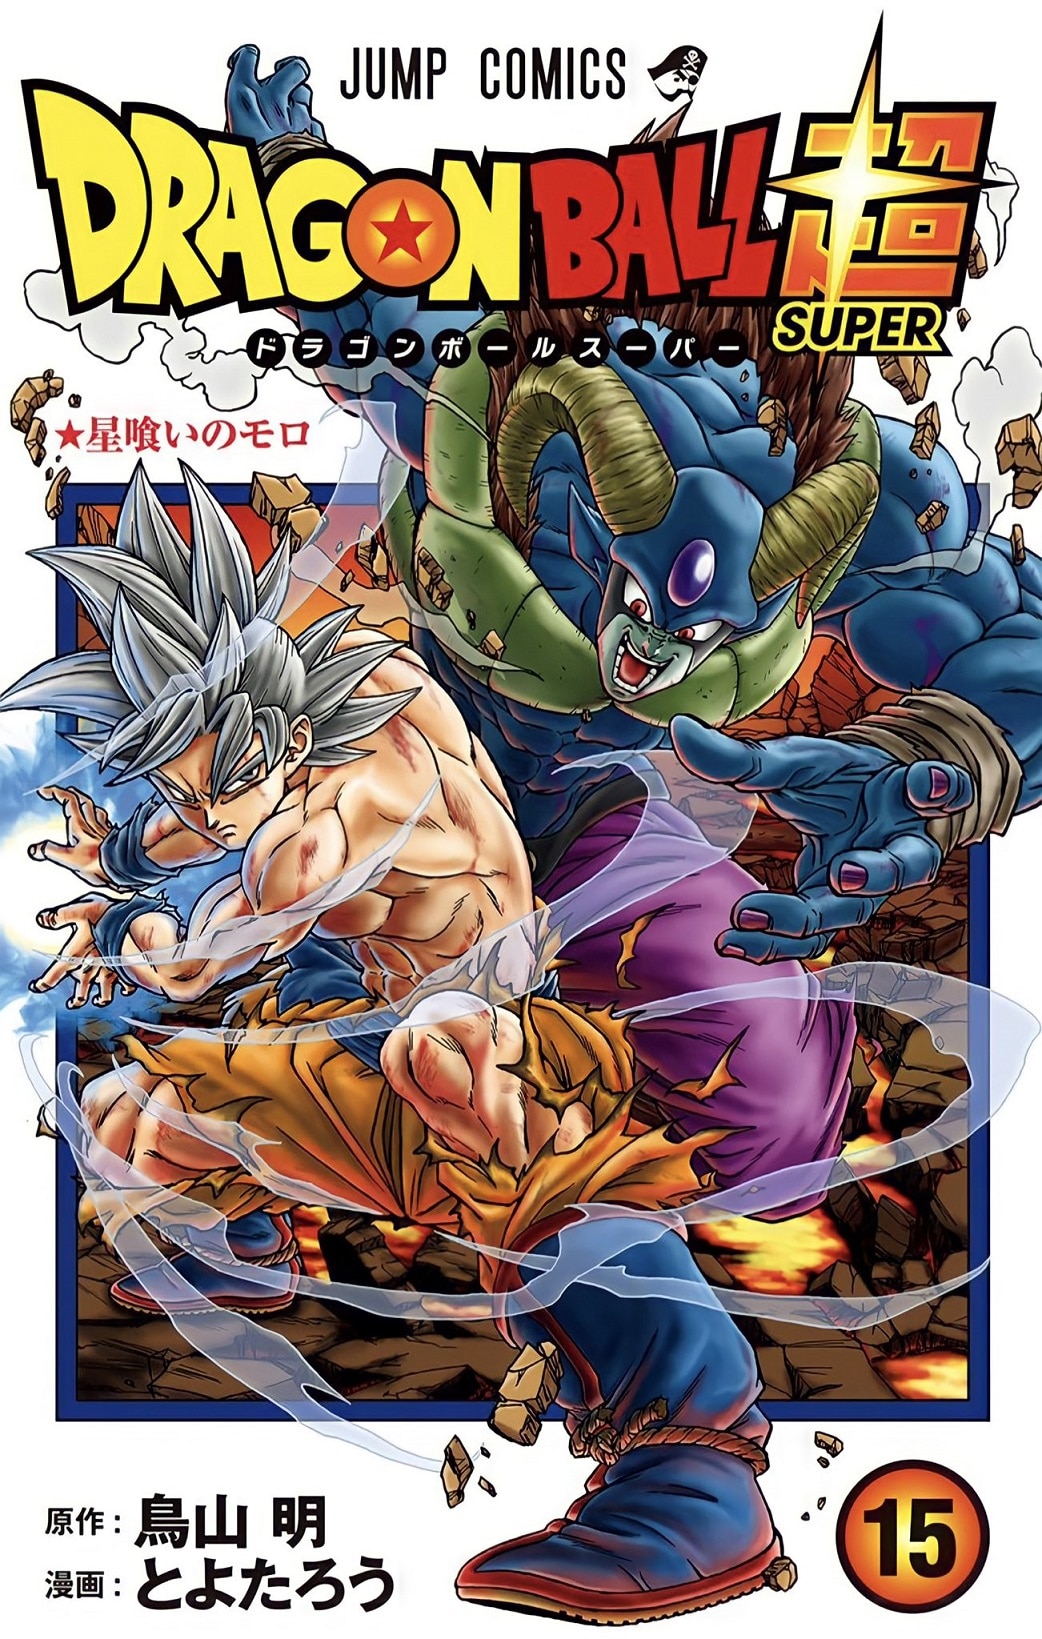 Volume 15 de Dragon Ball Super traz uma capa especial de Moro com Uub